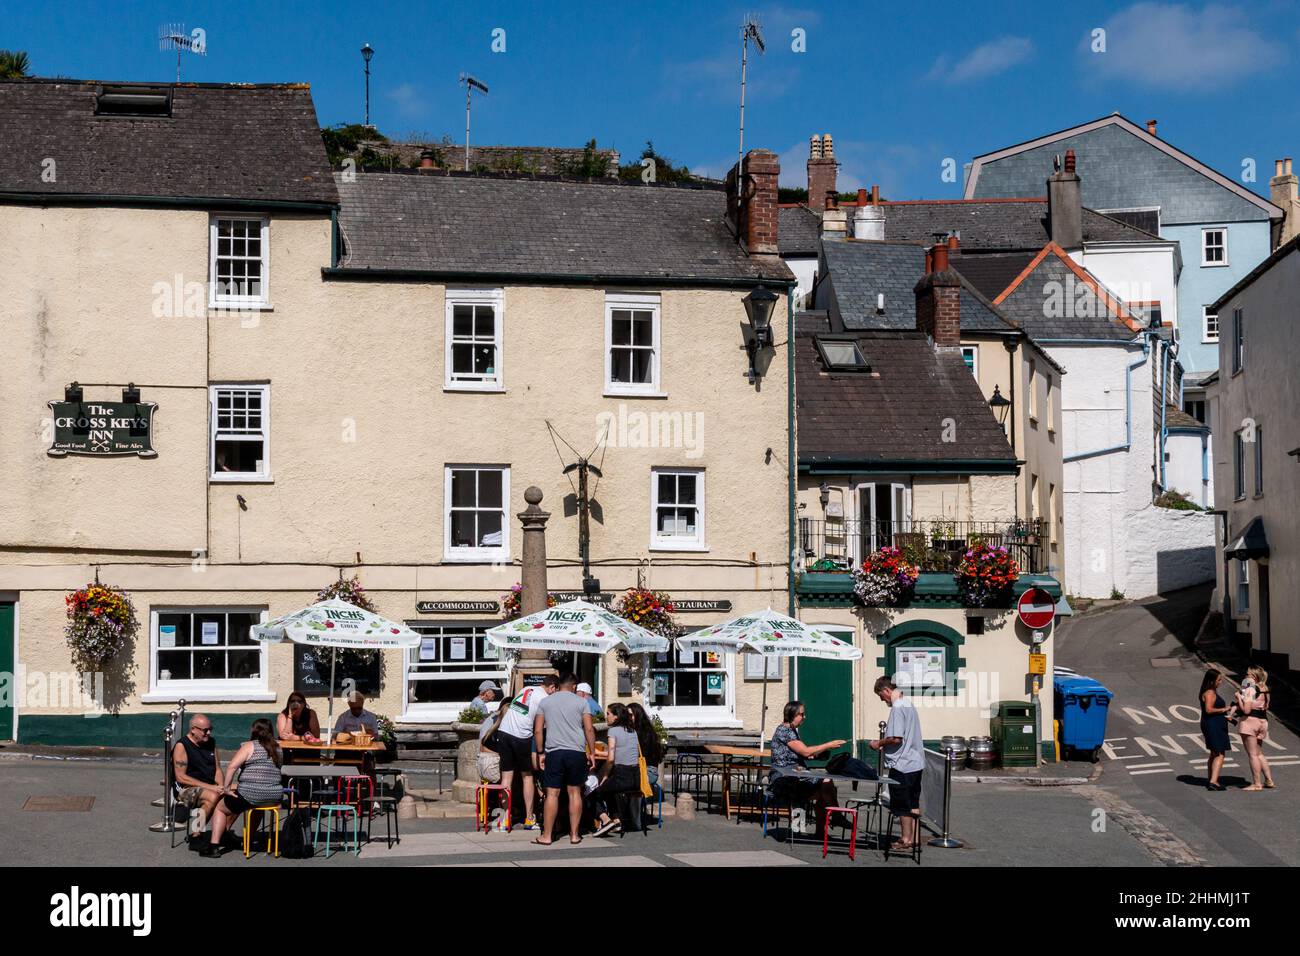 Les gens socialisent à l'extérieur de l'auberge Cross Key dans The Square, Cawsand, Cornwall.Les places temporaires à l'extérieur des pubs étaient populaires pendant la pandémie de Covid. Banque D'Images